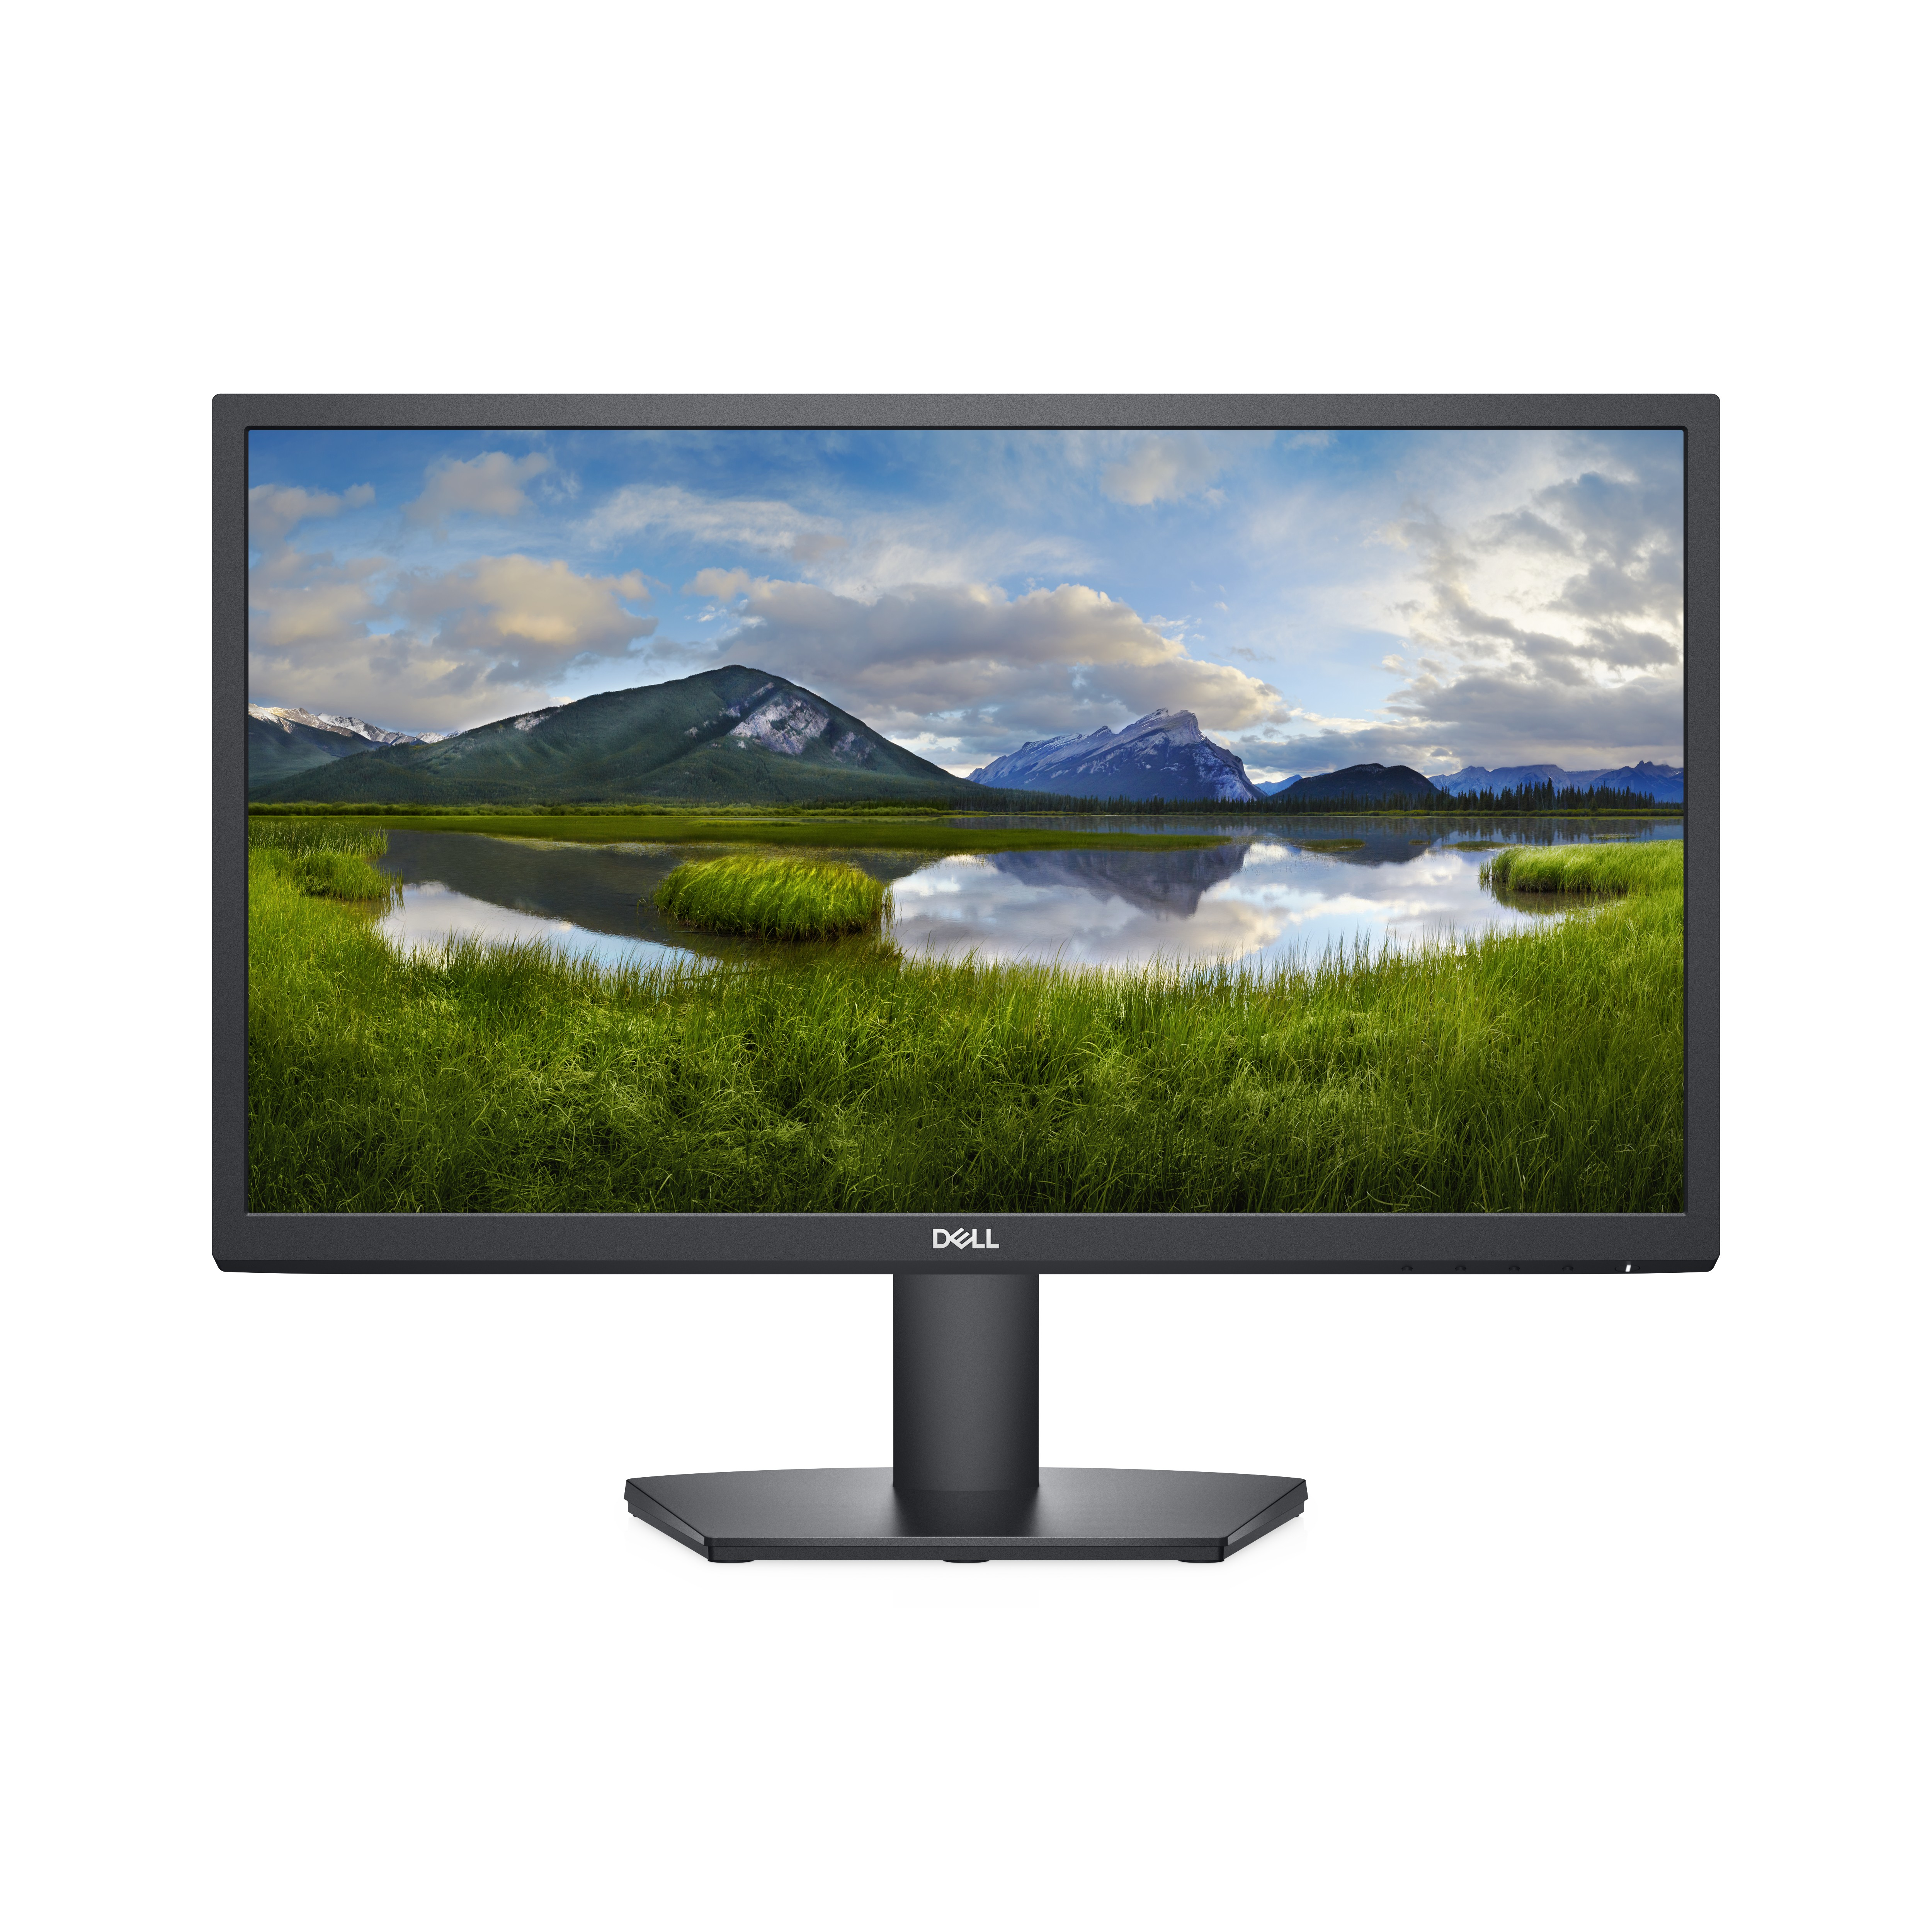 DELL SE2222H computer monitor